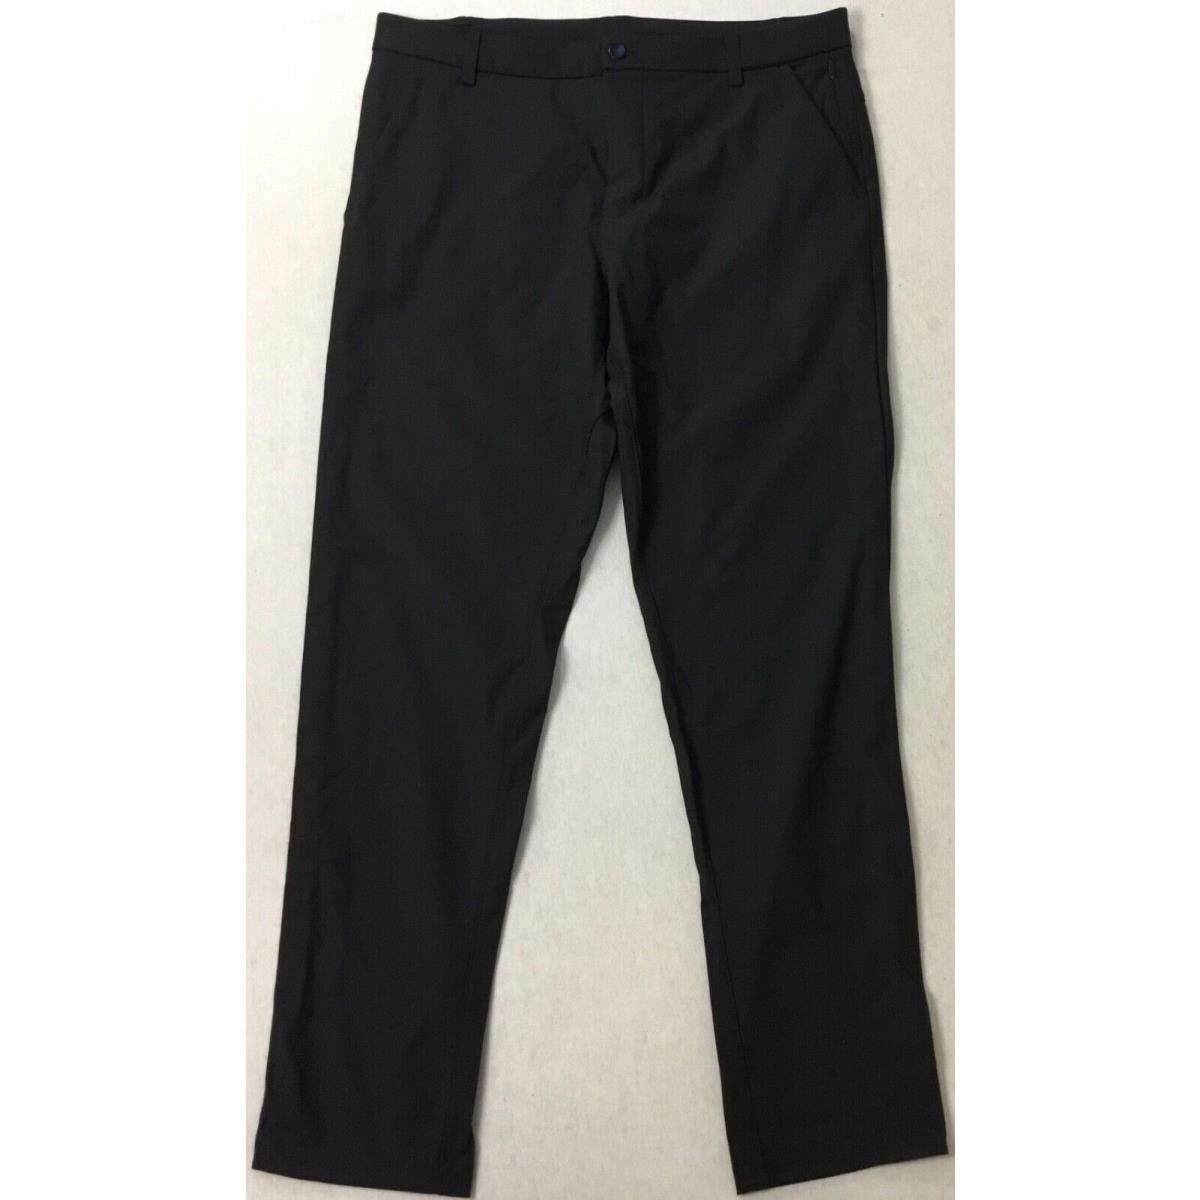 Lululemon Men s Pants Commission Pant Classic 32 Length Black LM5710S Size 30